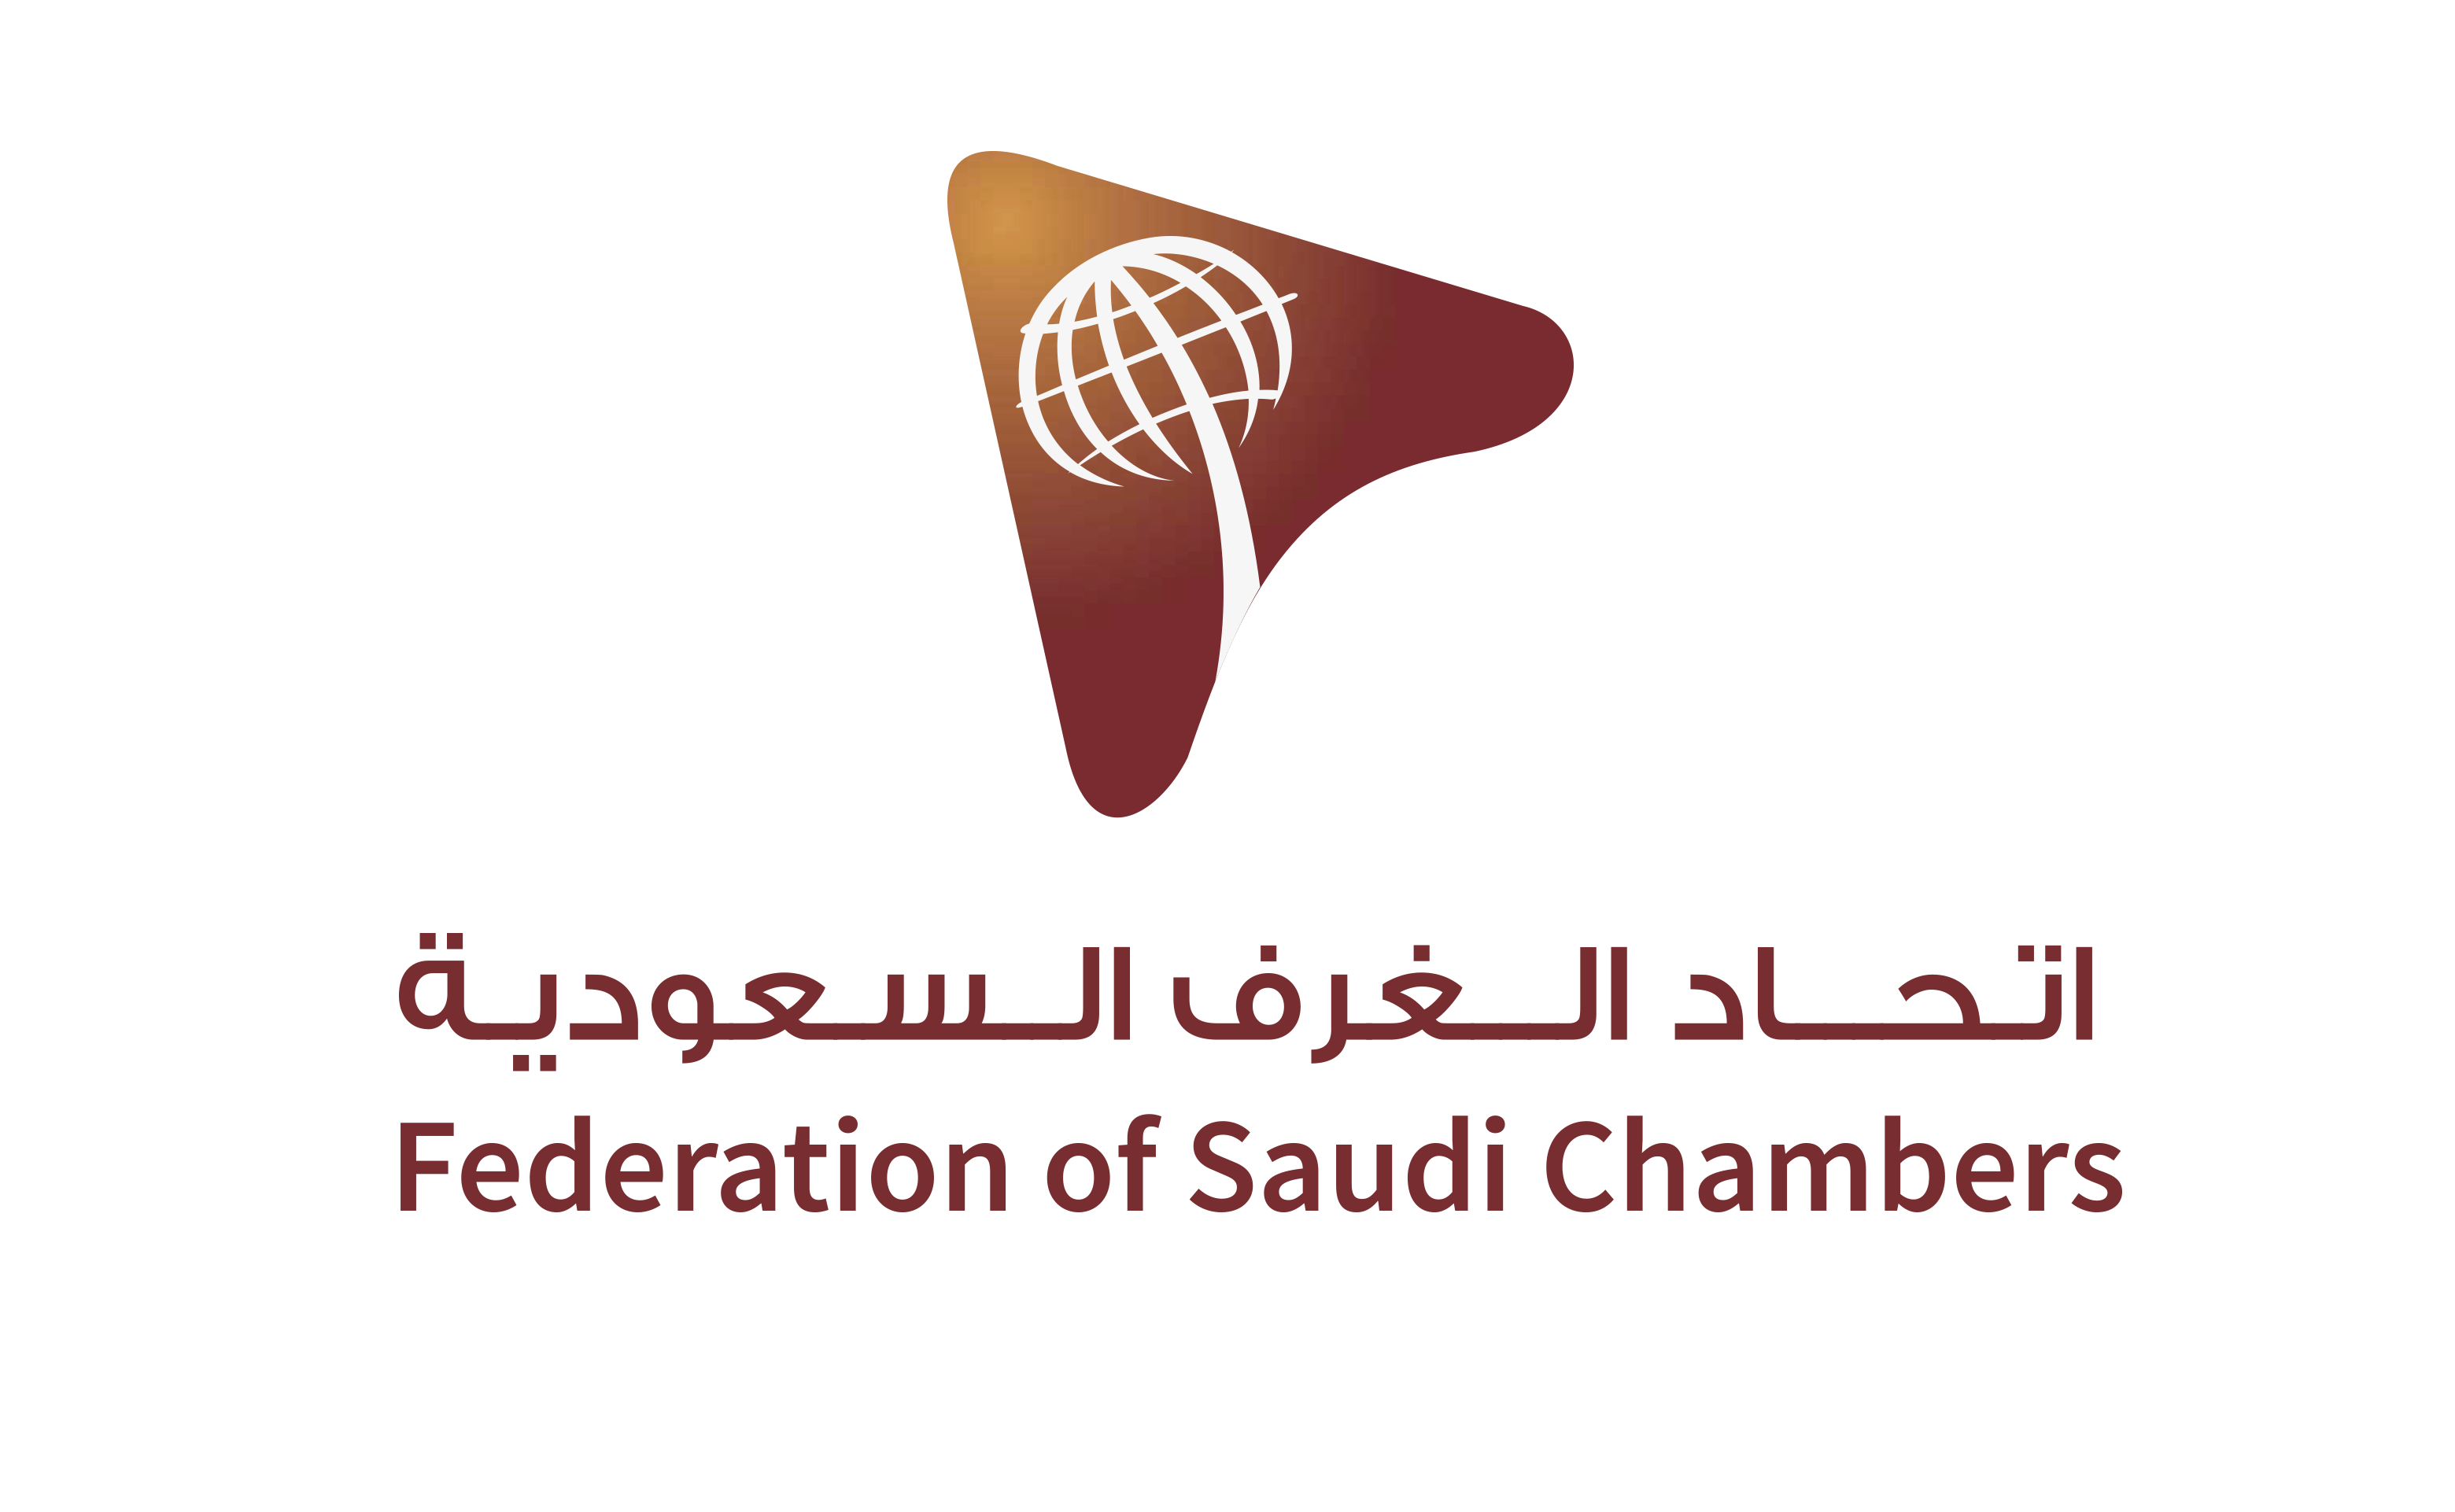 شعار اتحاد الغرف السعودية الشعار الثاني1713787325